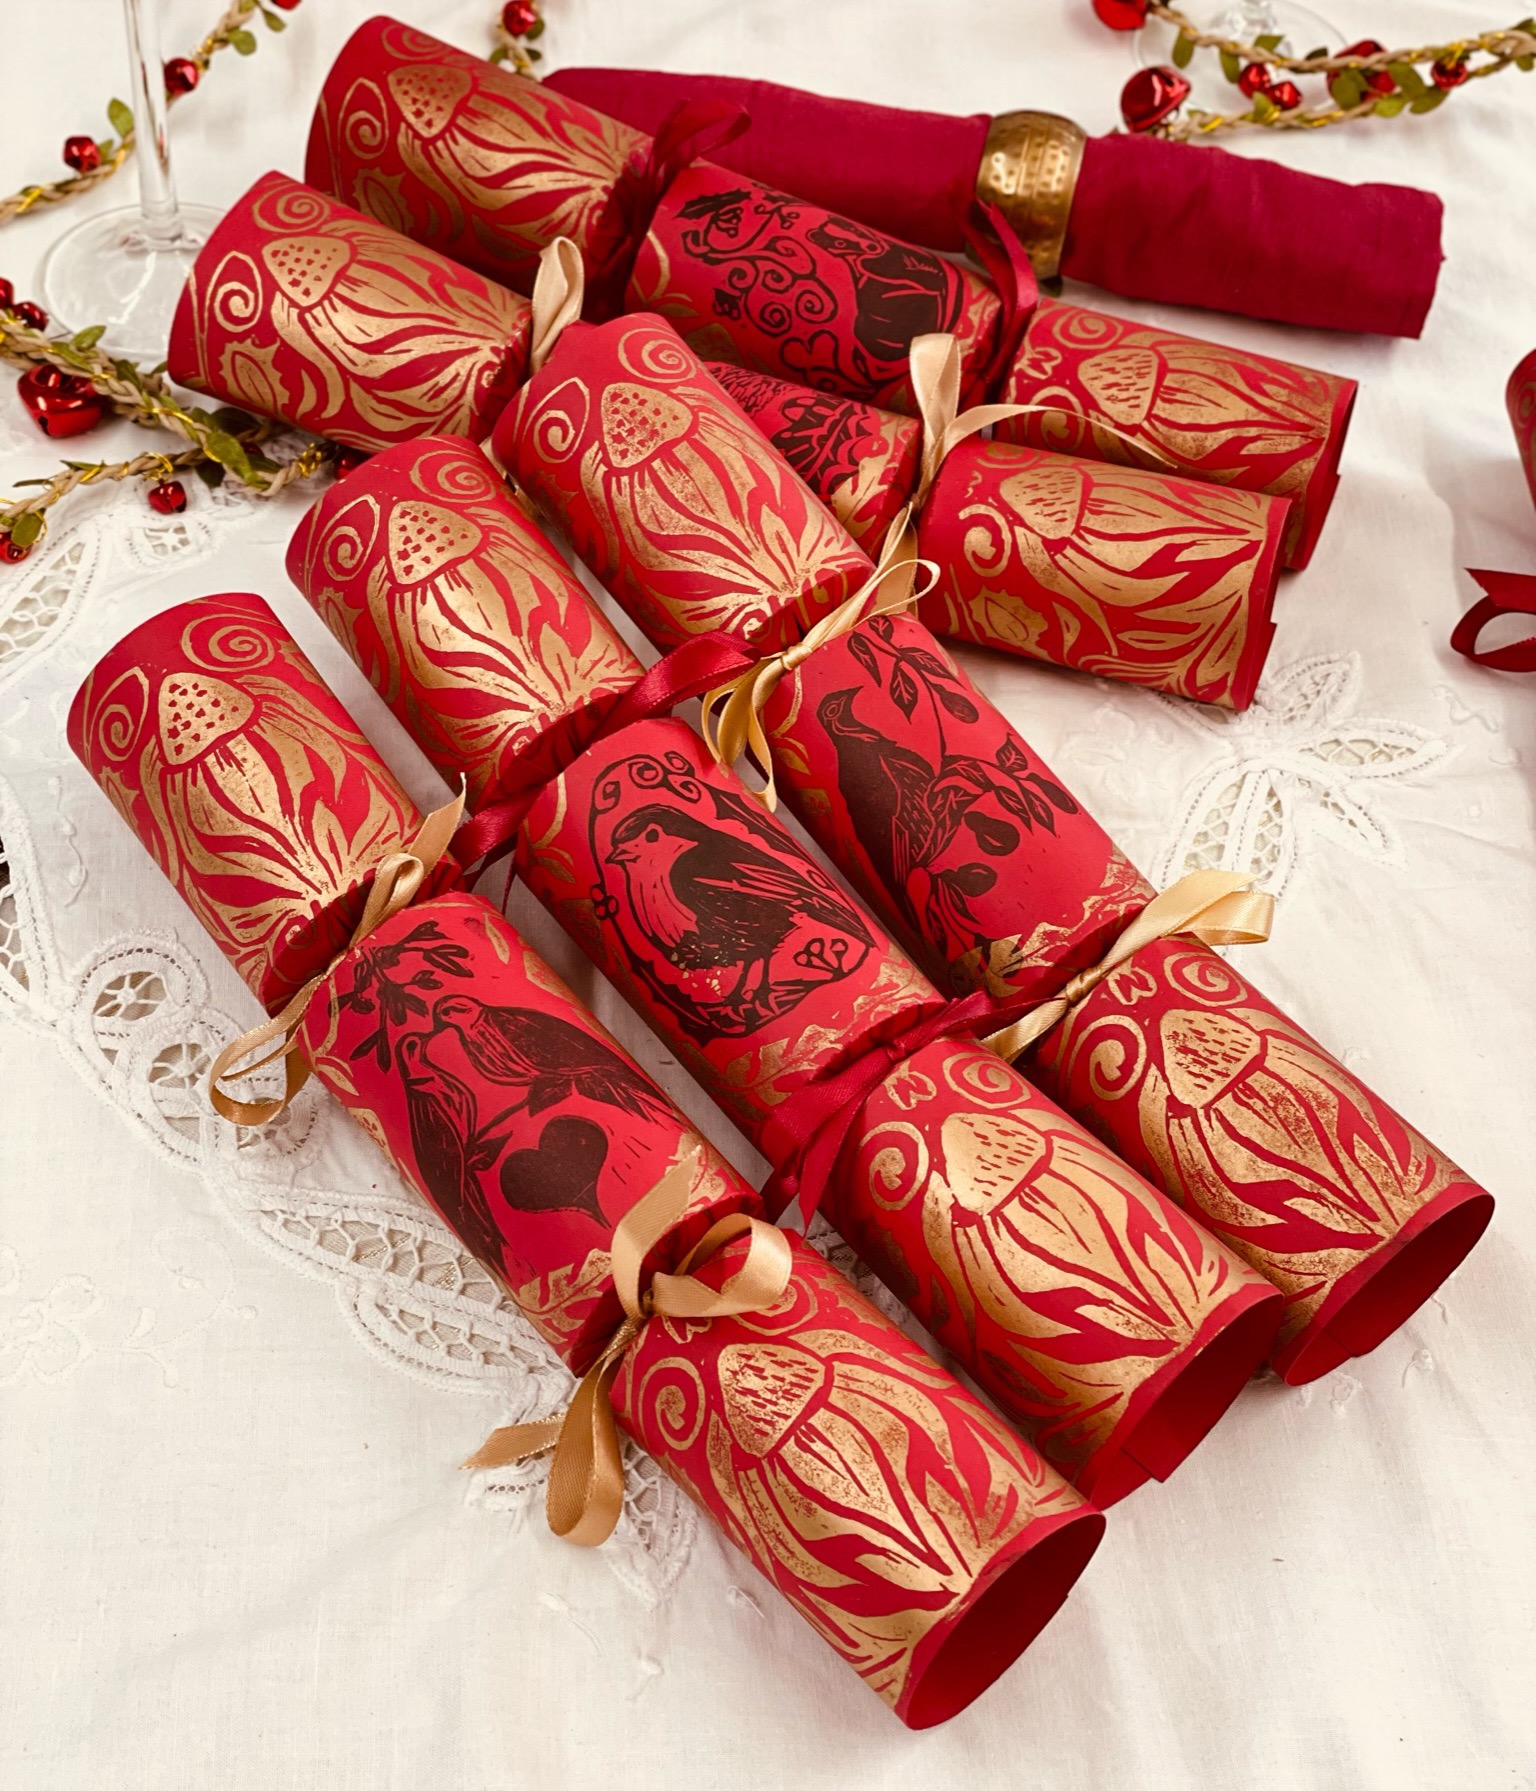 Six Luxury Christmas Gift Crackers